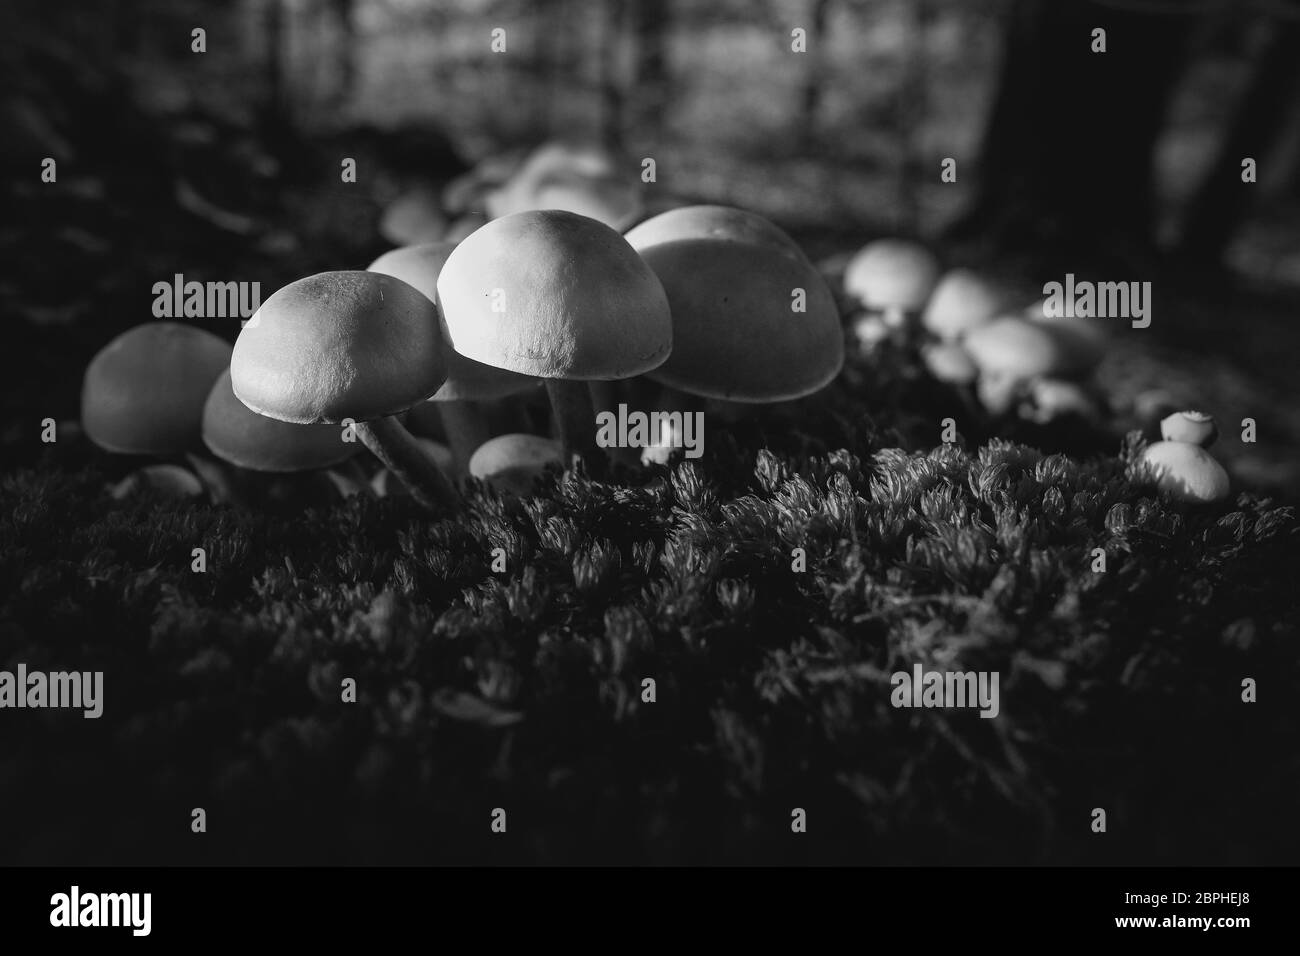 Aufnahme von Grünblättrige Schwefelköpfe auf moosbedekten Totholz - zum Thema Mykologie - Makroaufnahme - in schwarz weiß Stock Photo